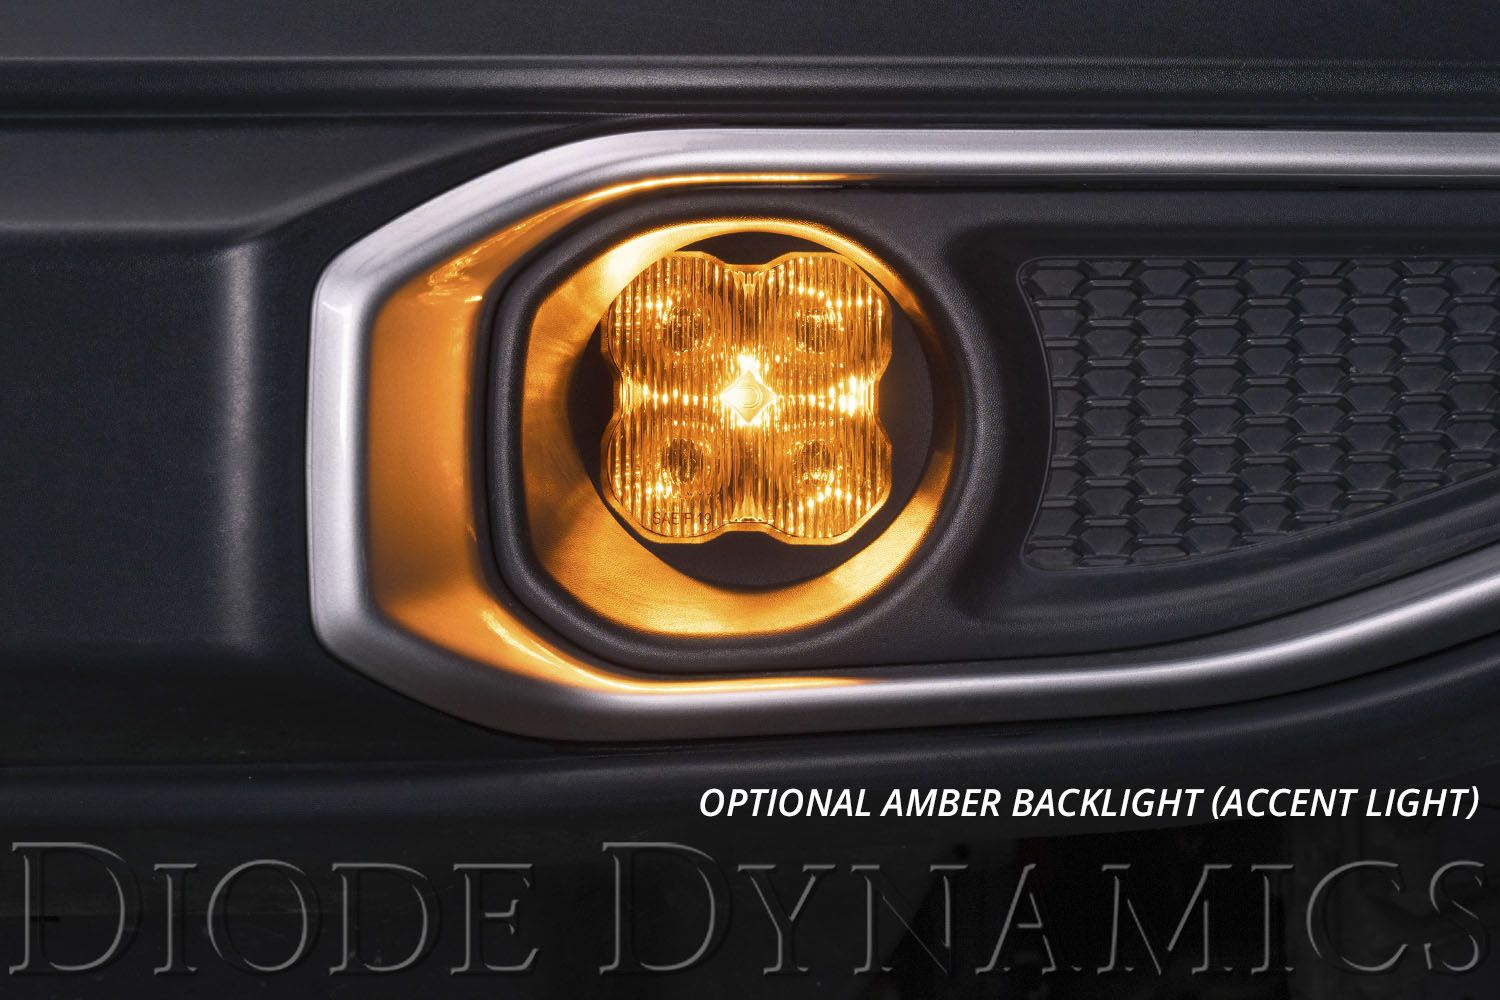 SS3 LED Fog Light Kit for 2014-2017 Lexus CT200h Diode Dynamics-